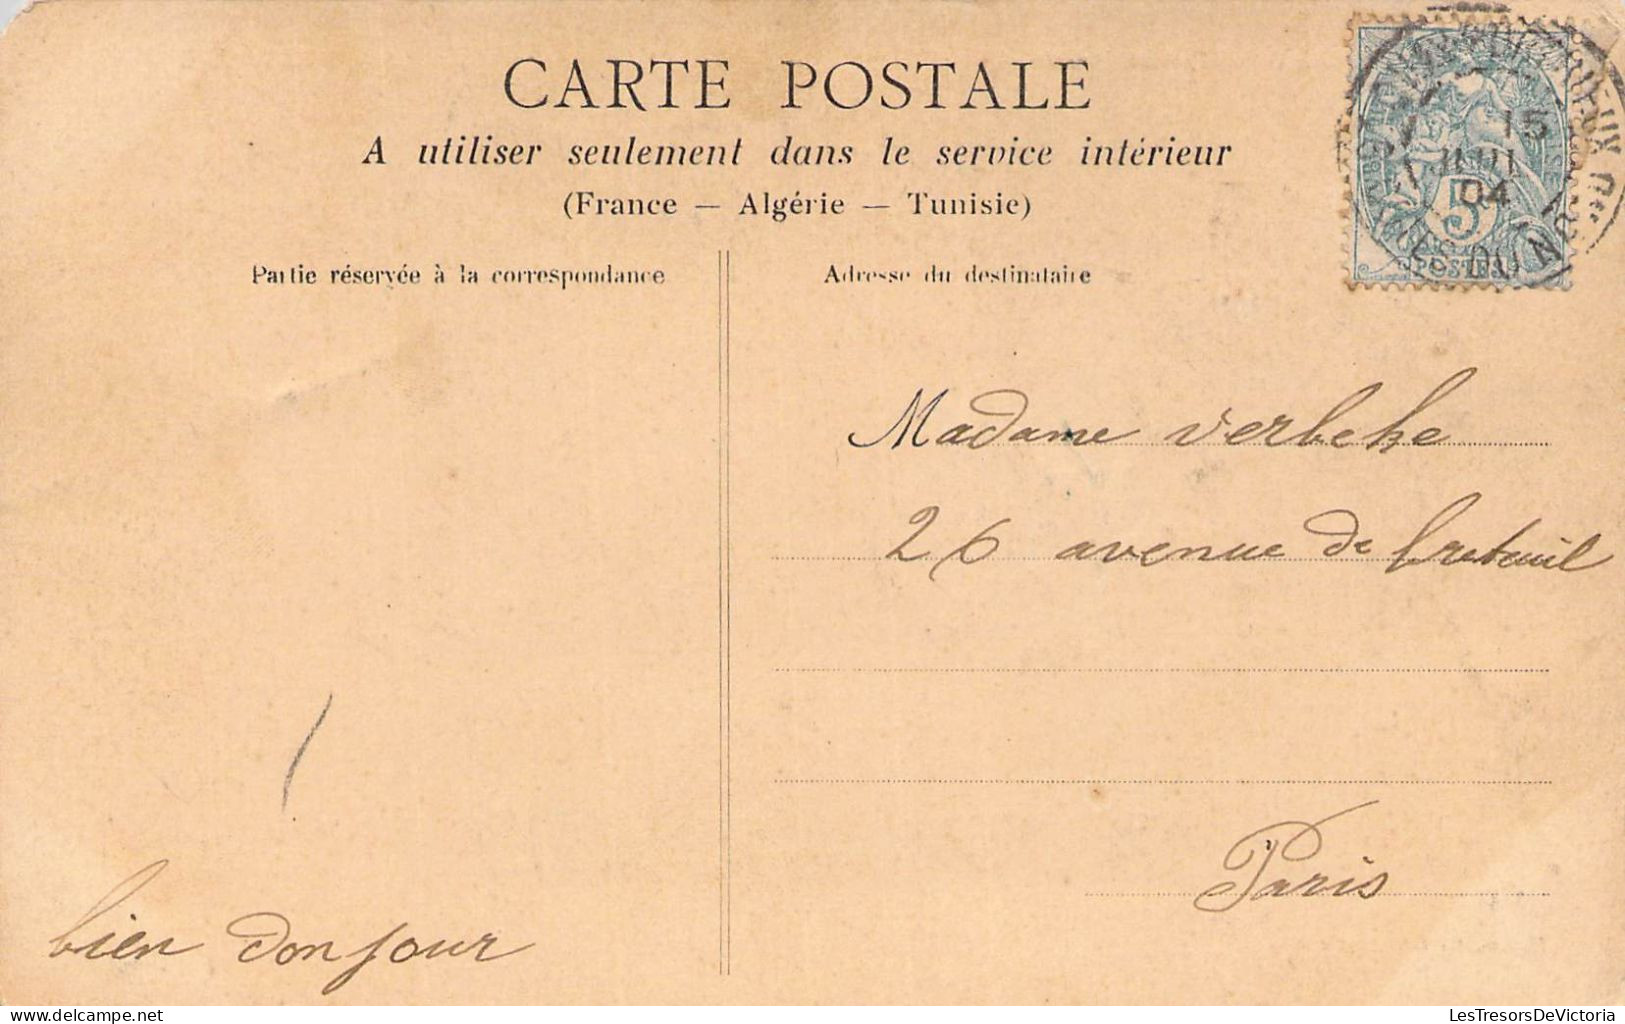 FRANCE - 22 - BINIC - Avant Port Un Jour De Régates - Carte Postale Ancienne - Binic